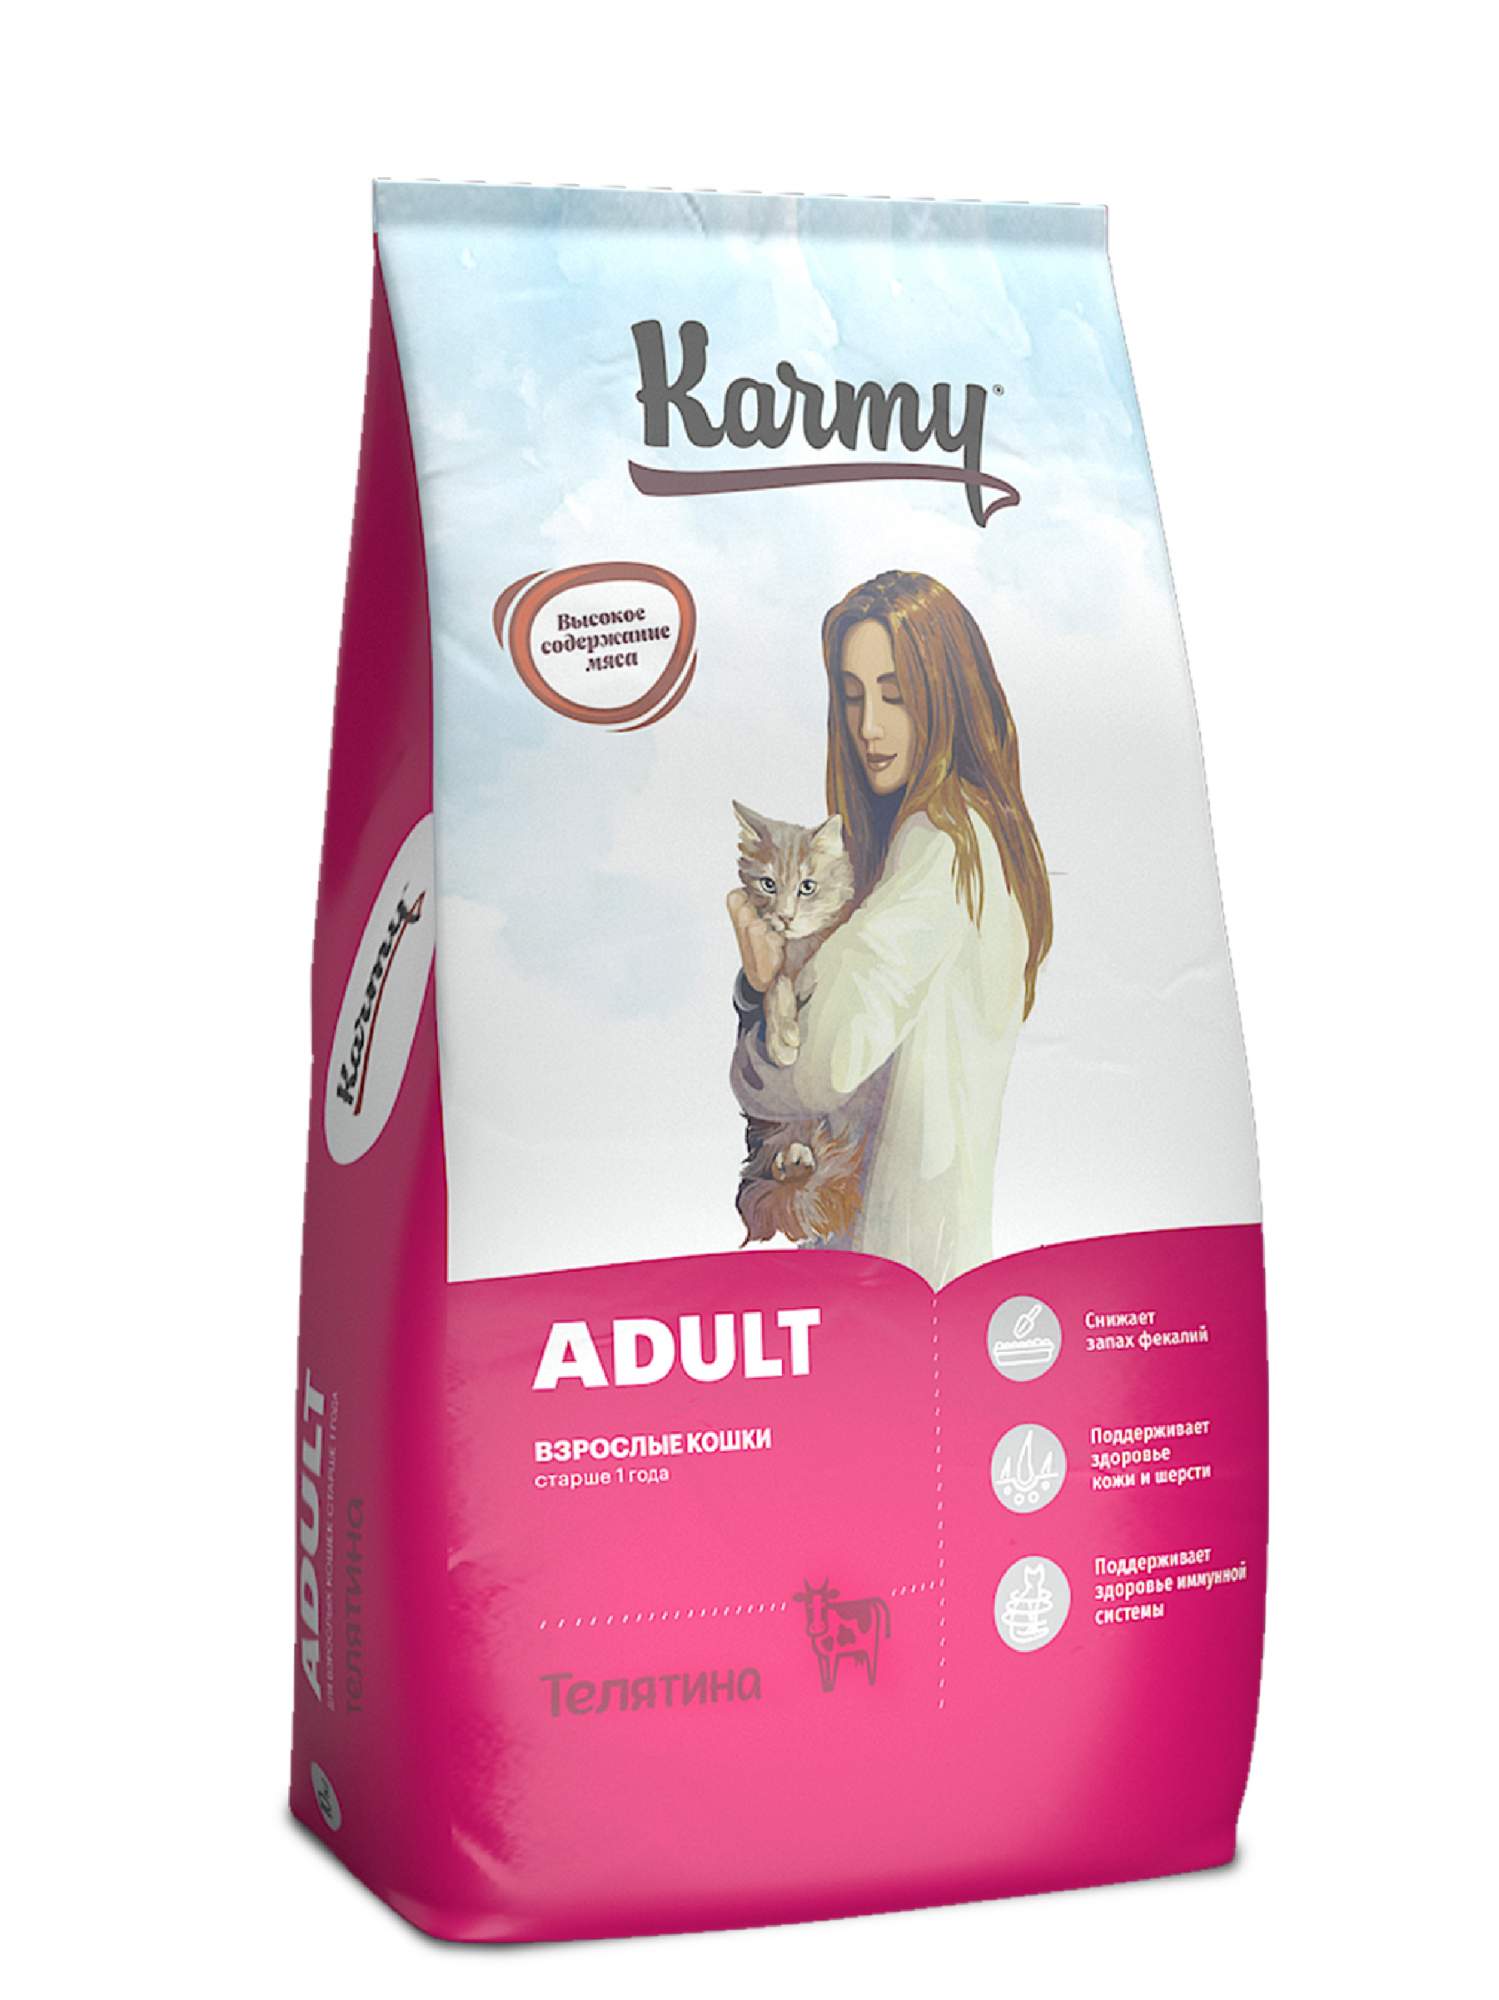 Купить сухой корм для кошек Karmy Adult, телятина, 10кг, цены на Мегамаркет | Артикул: 600000137615